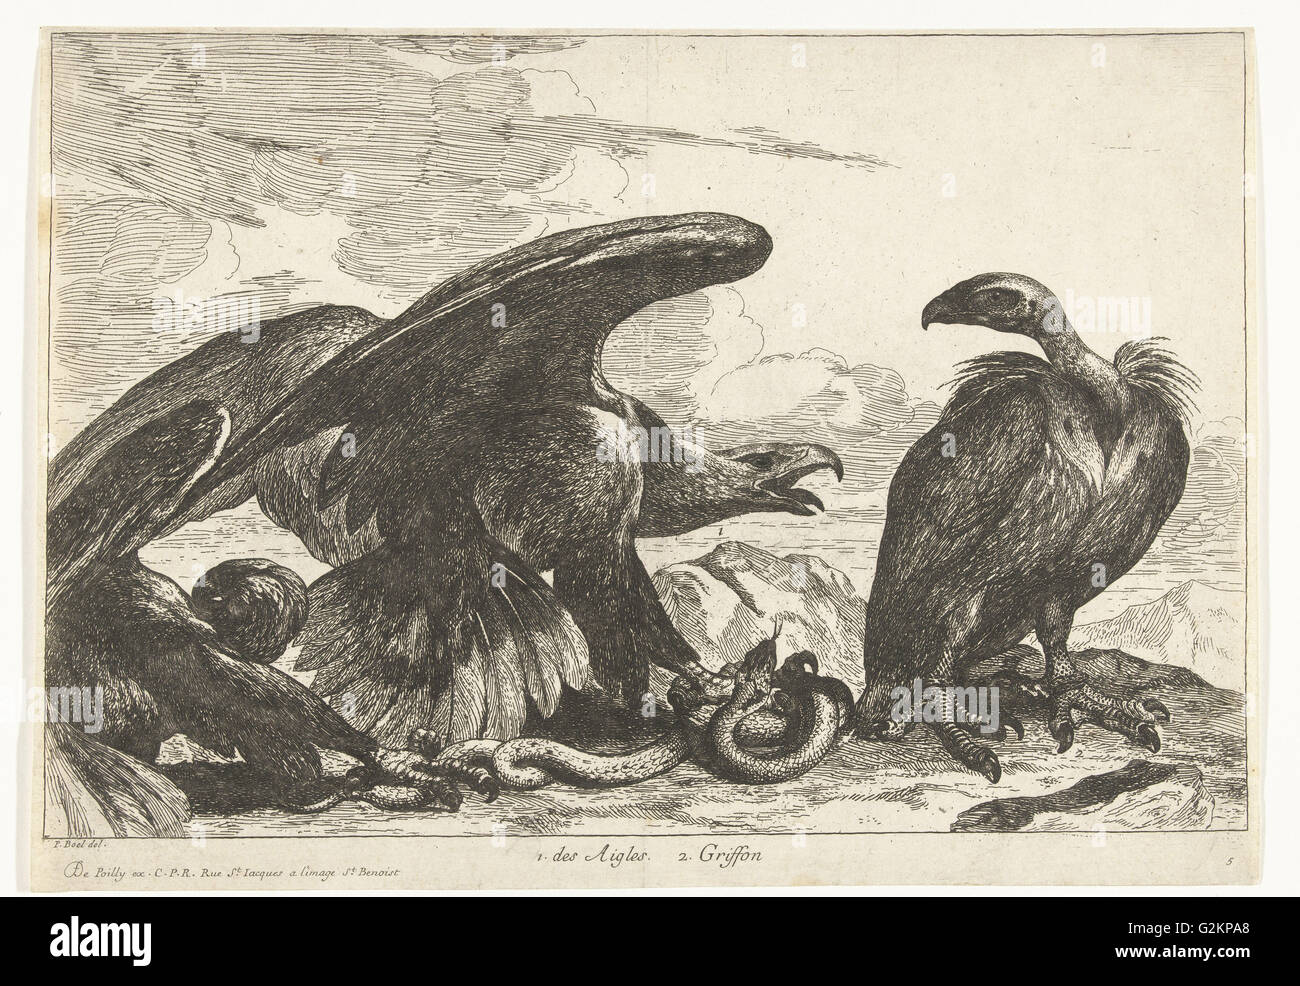 Vautour et un aigle avec snake, imprimer bouilloire : Peeter Boel attribué à, Peeter Boel, De Poilly, 1670 - 1674 Banque D'Images